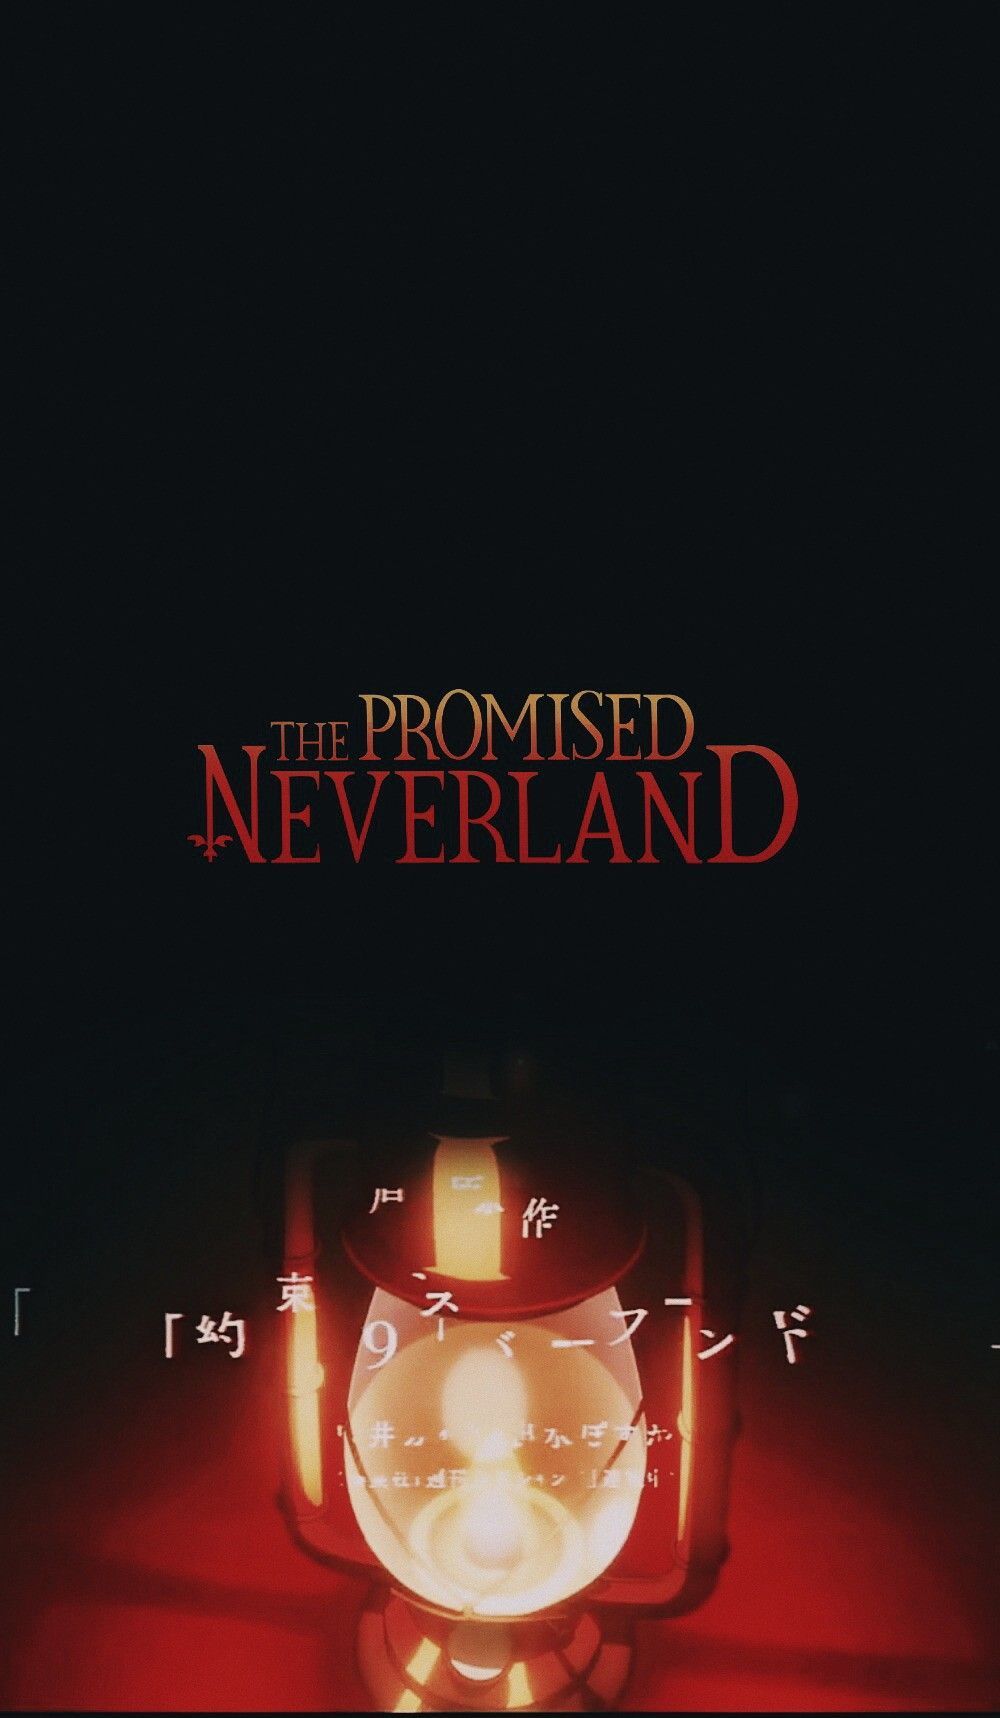 The Promised Neverland 》wallpaper!. Neverland, Neverland art, Anime wallpaper